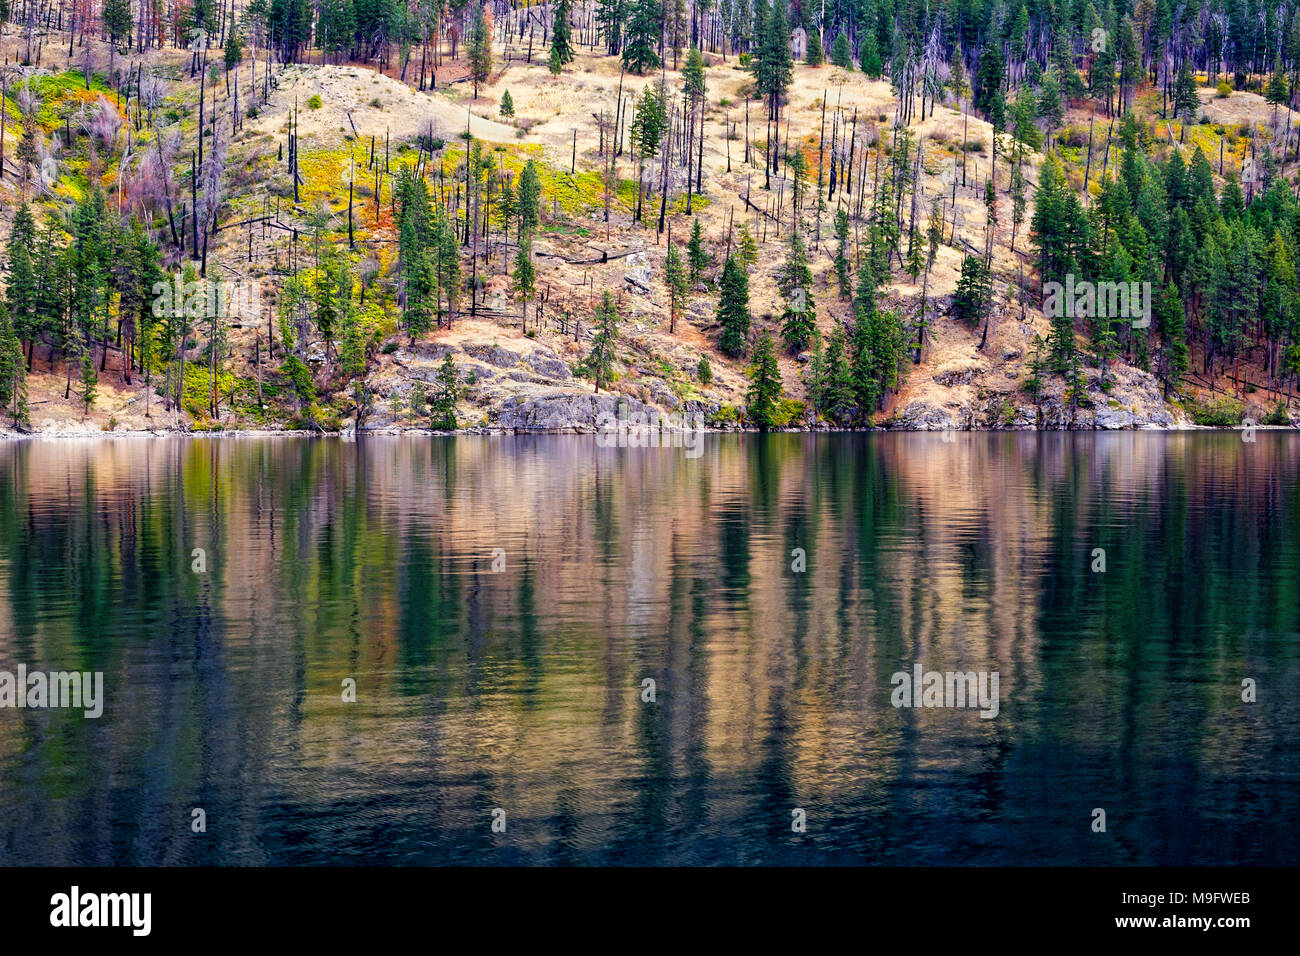 41,926.03694 ruhigen Wasser des Lake Chelan show Herbst Farbe Reflexionen von den Bäumen auf dem Lake Shore Cliff, Nadel- und Laubbäume Stockfoto